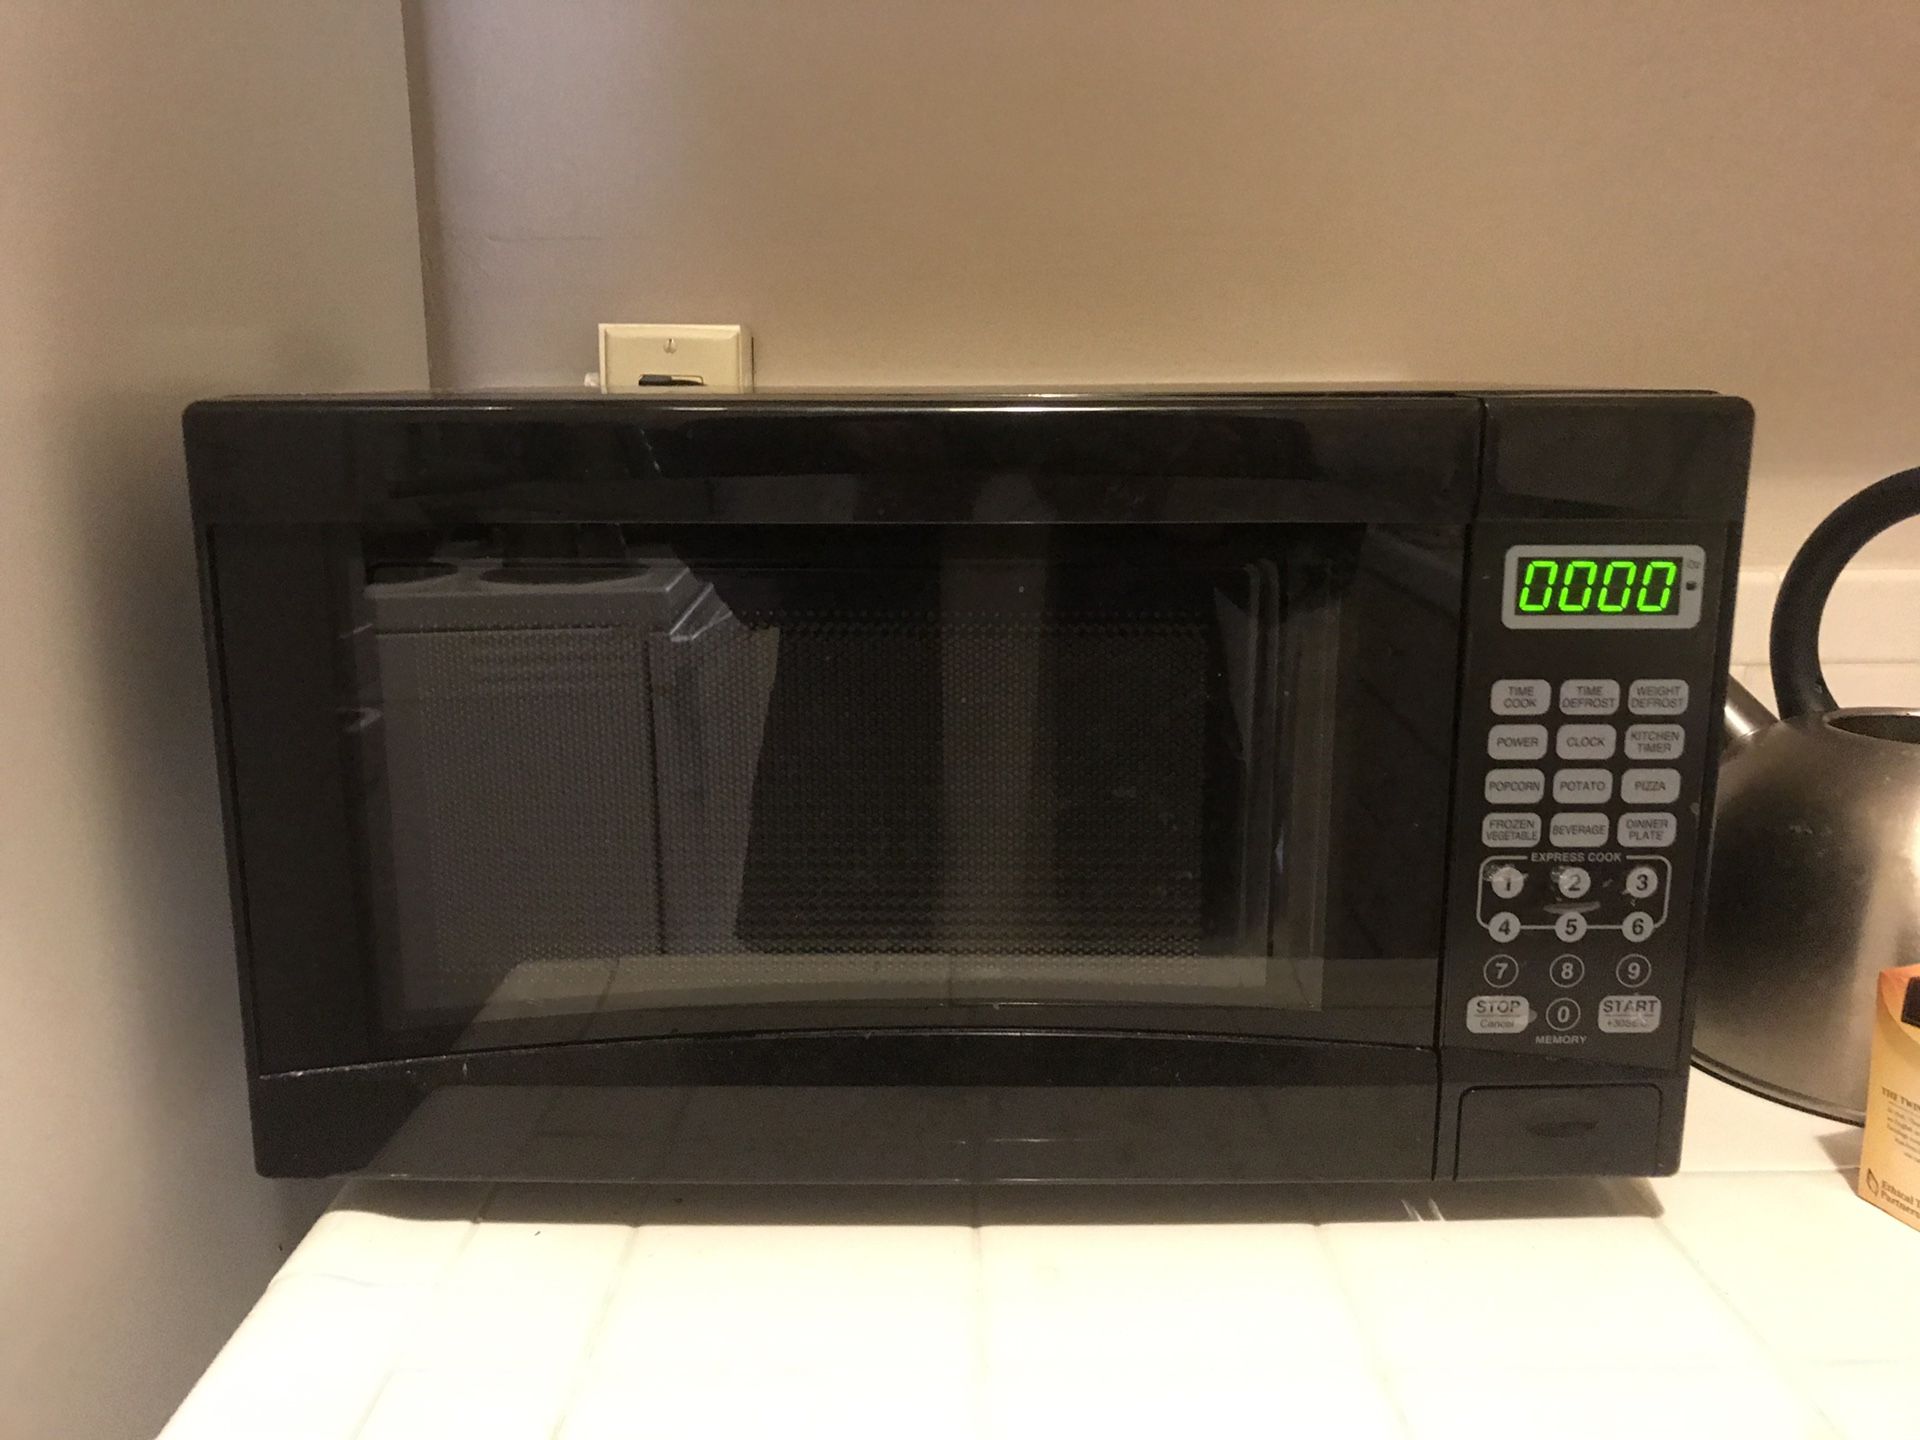 Microwave-$3